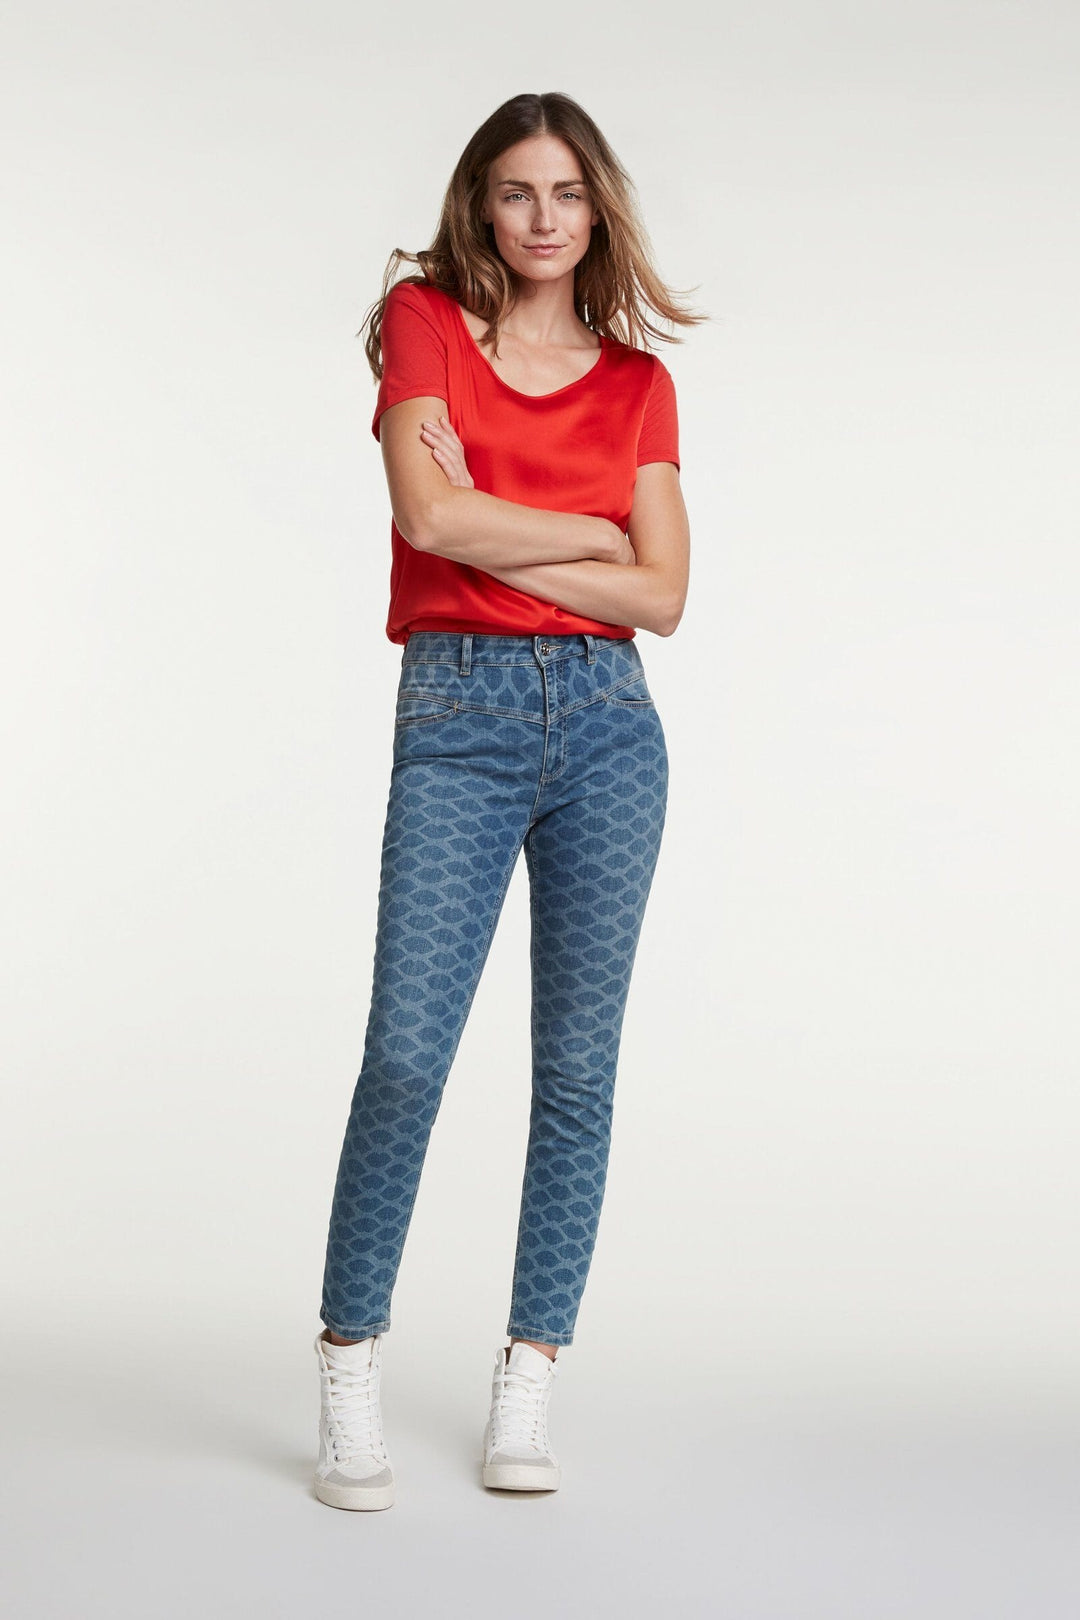 Jeans imprimé Femme - Bas - Pantalon - Jeans Oui